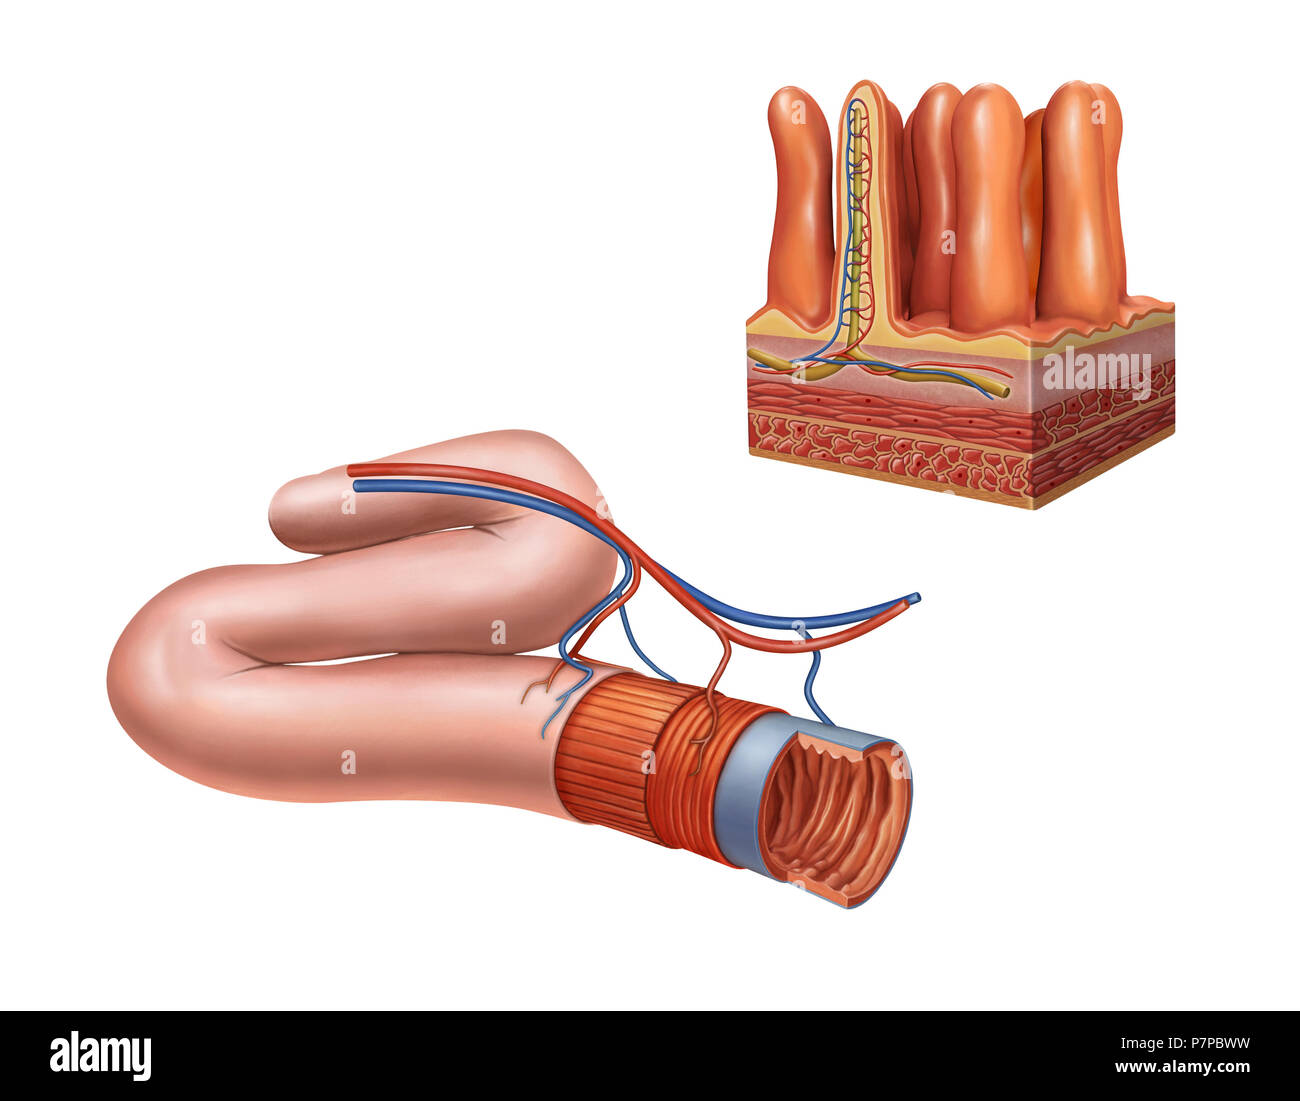 Anatomie de l'intestin grêle. Illustration numérique. Banque D'Images